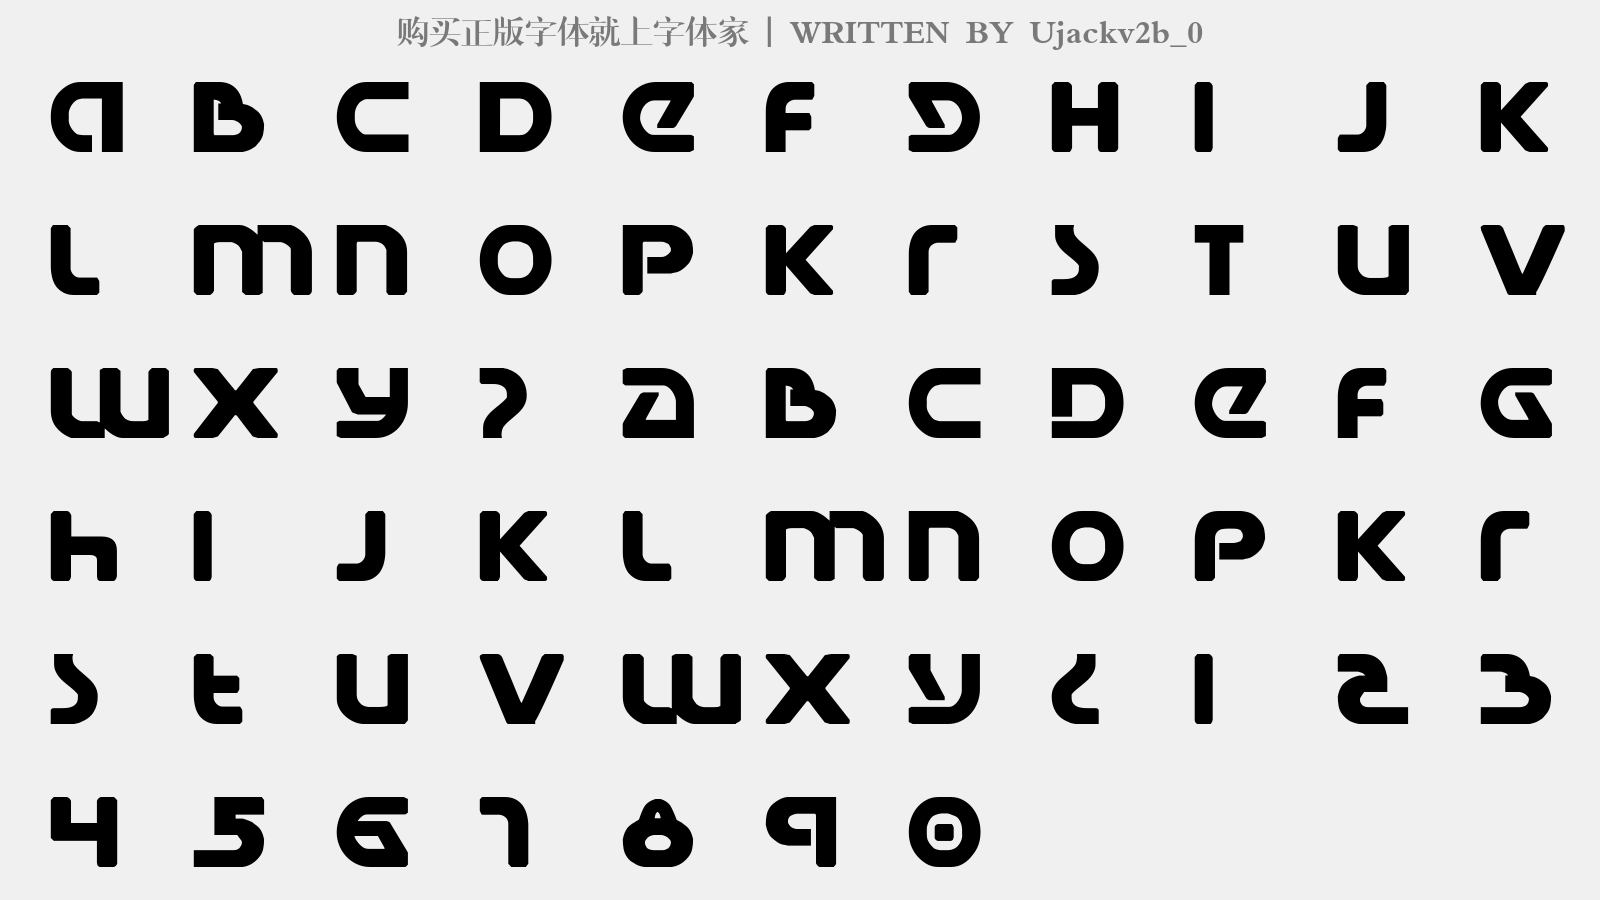 Ujackv2b_0 - 大写字母/小写字母/数字